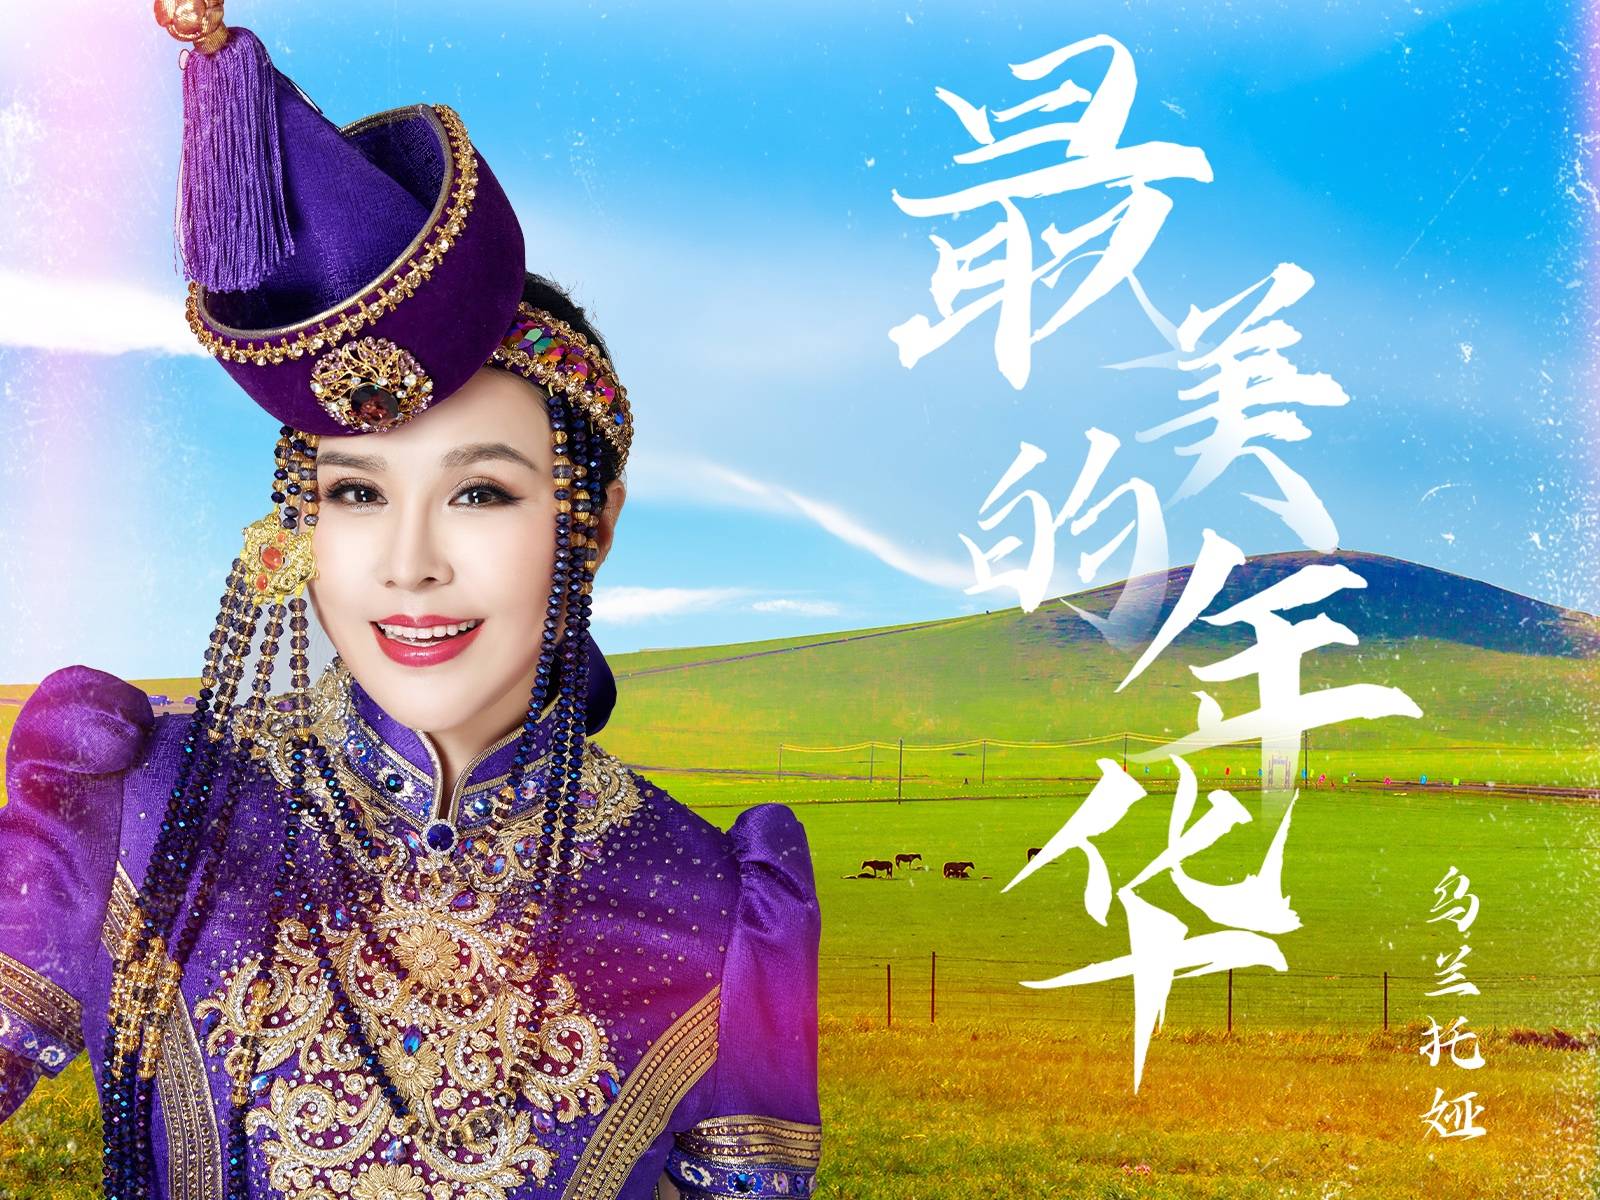 由中国十大青年作曲家胡力创作,著名歌手乌兰托娅演唱的全新单曲